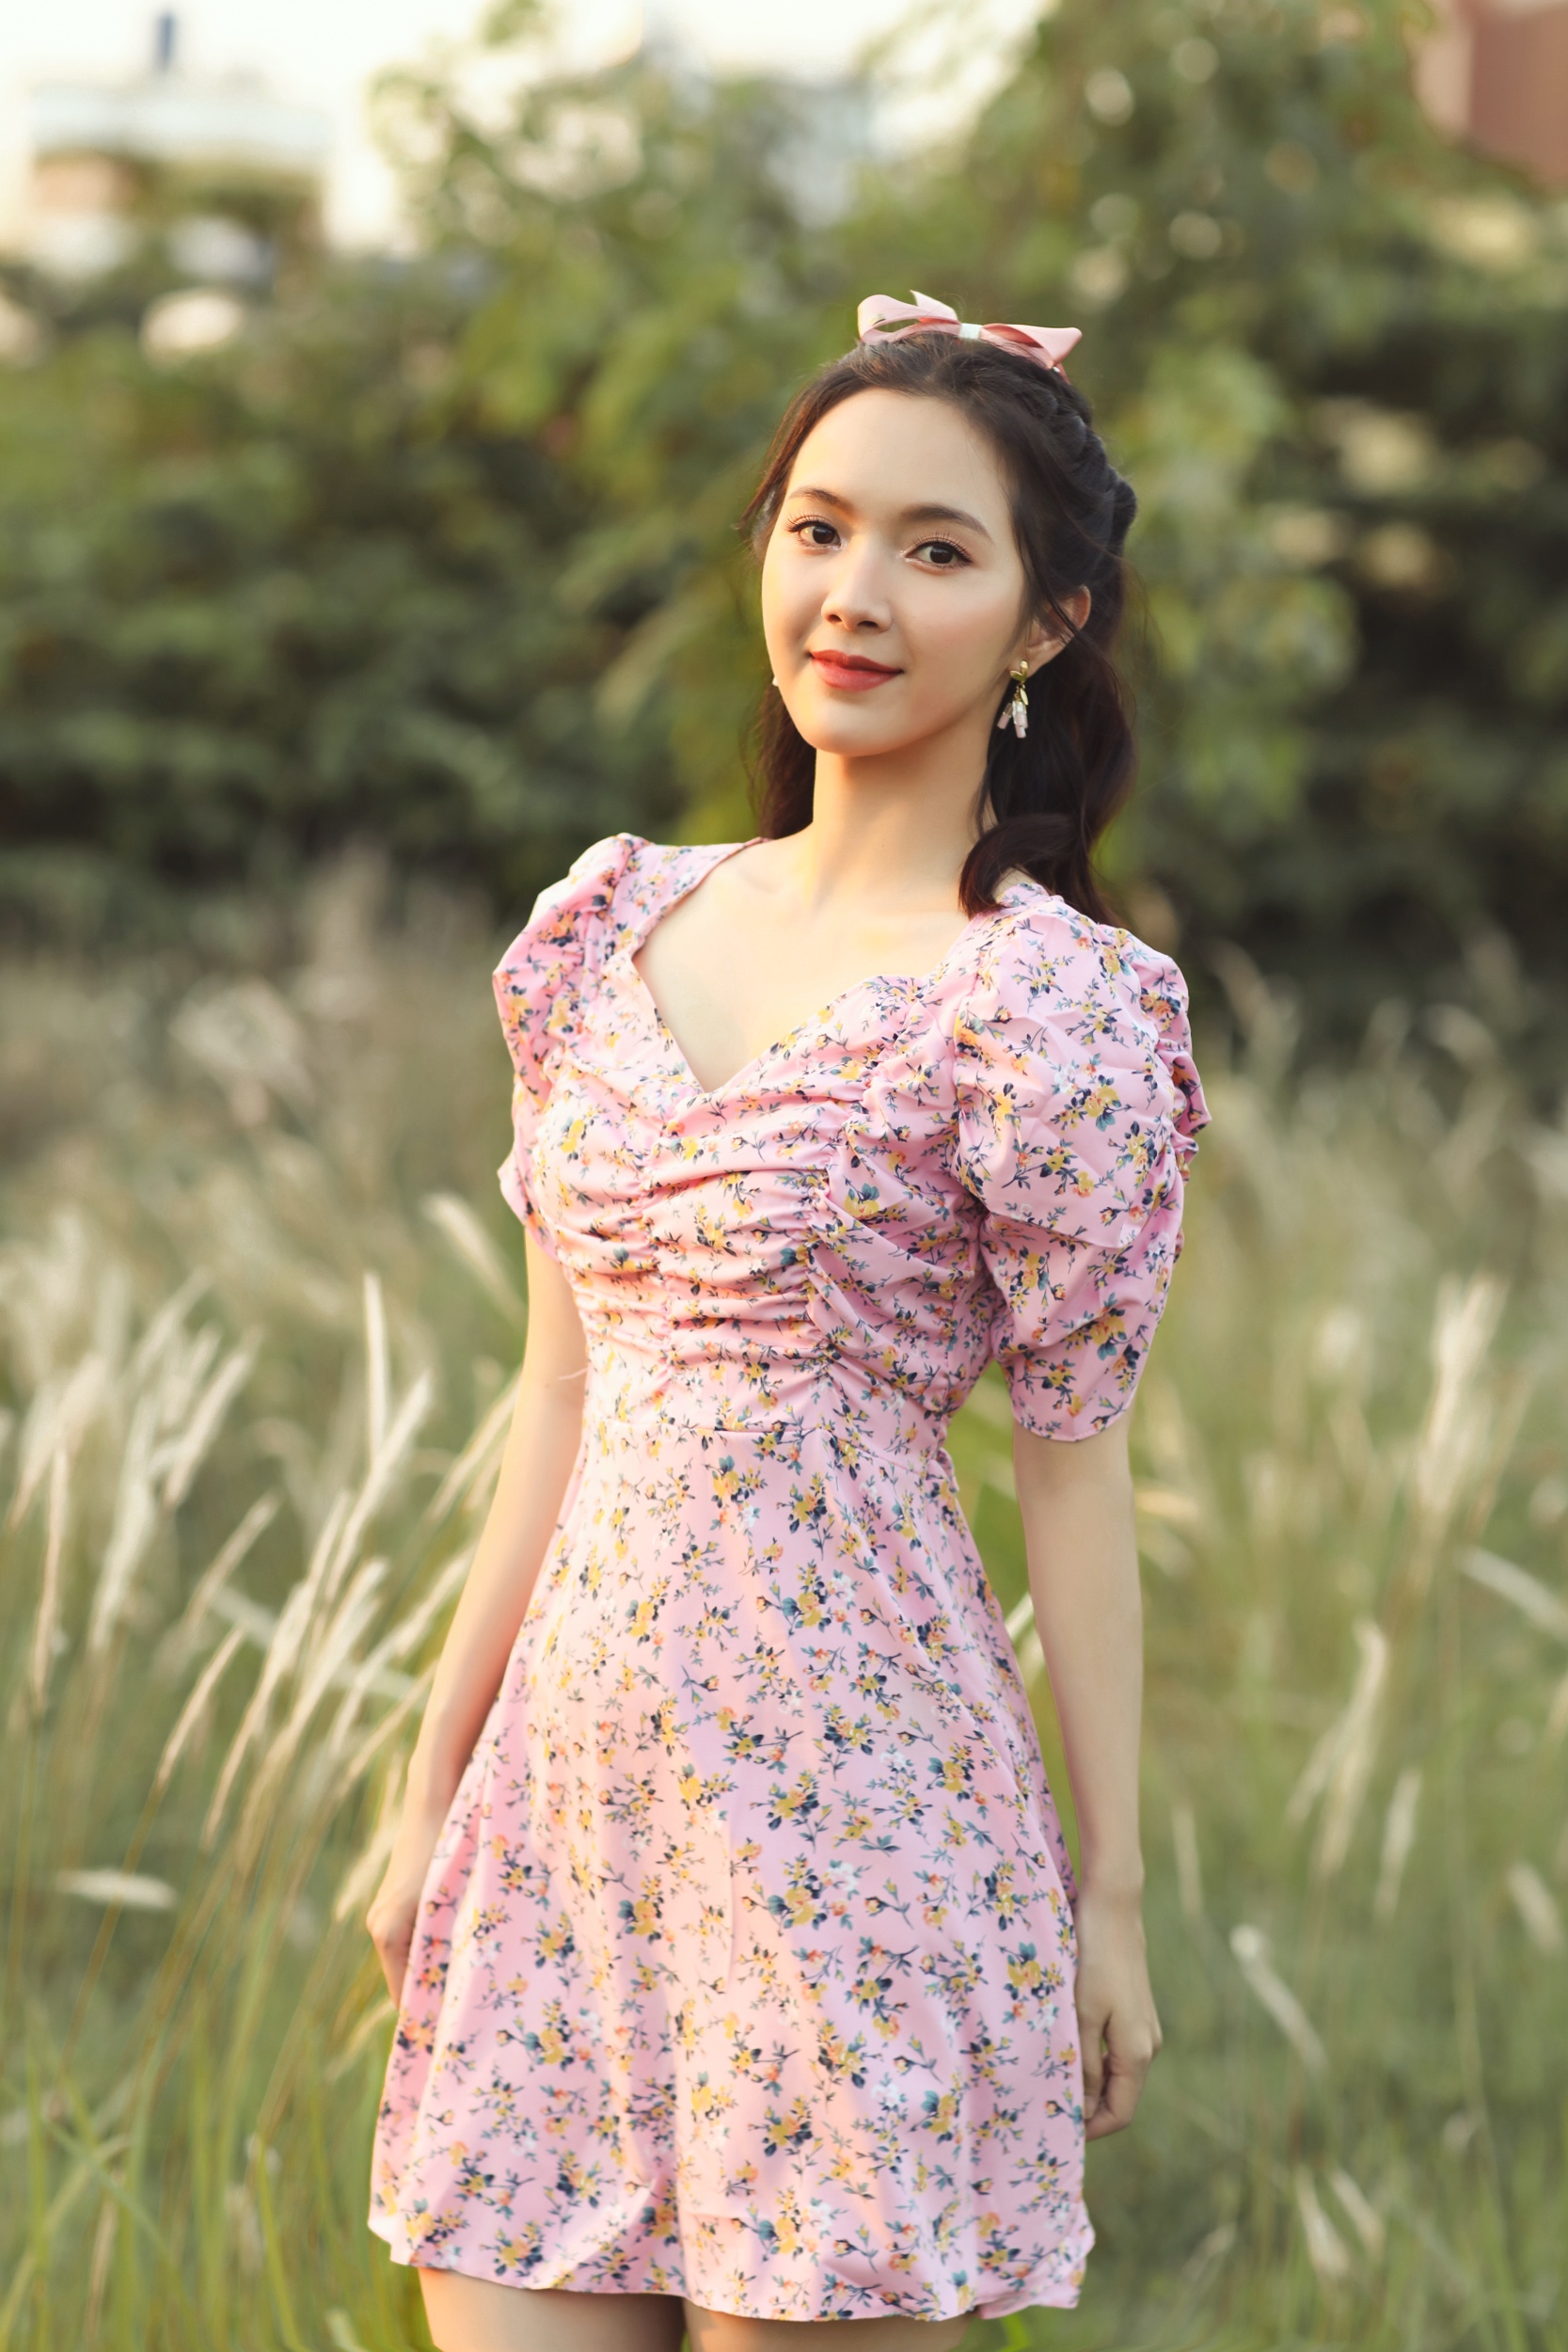 Jang Mi hóa ‘tiên nữ mùa hè’ trong bộ ảnh mới